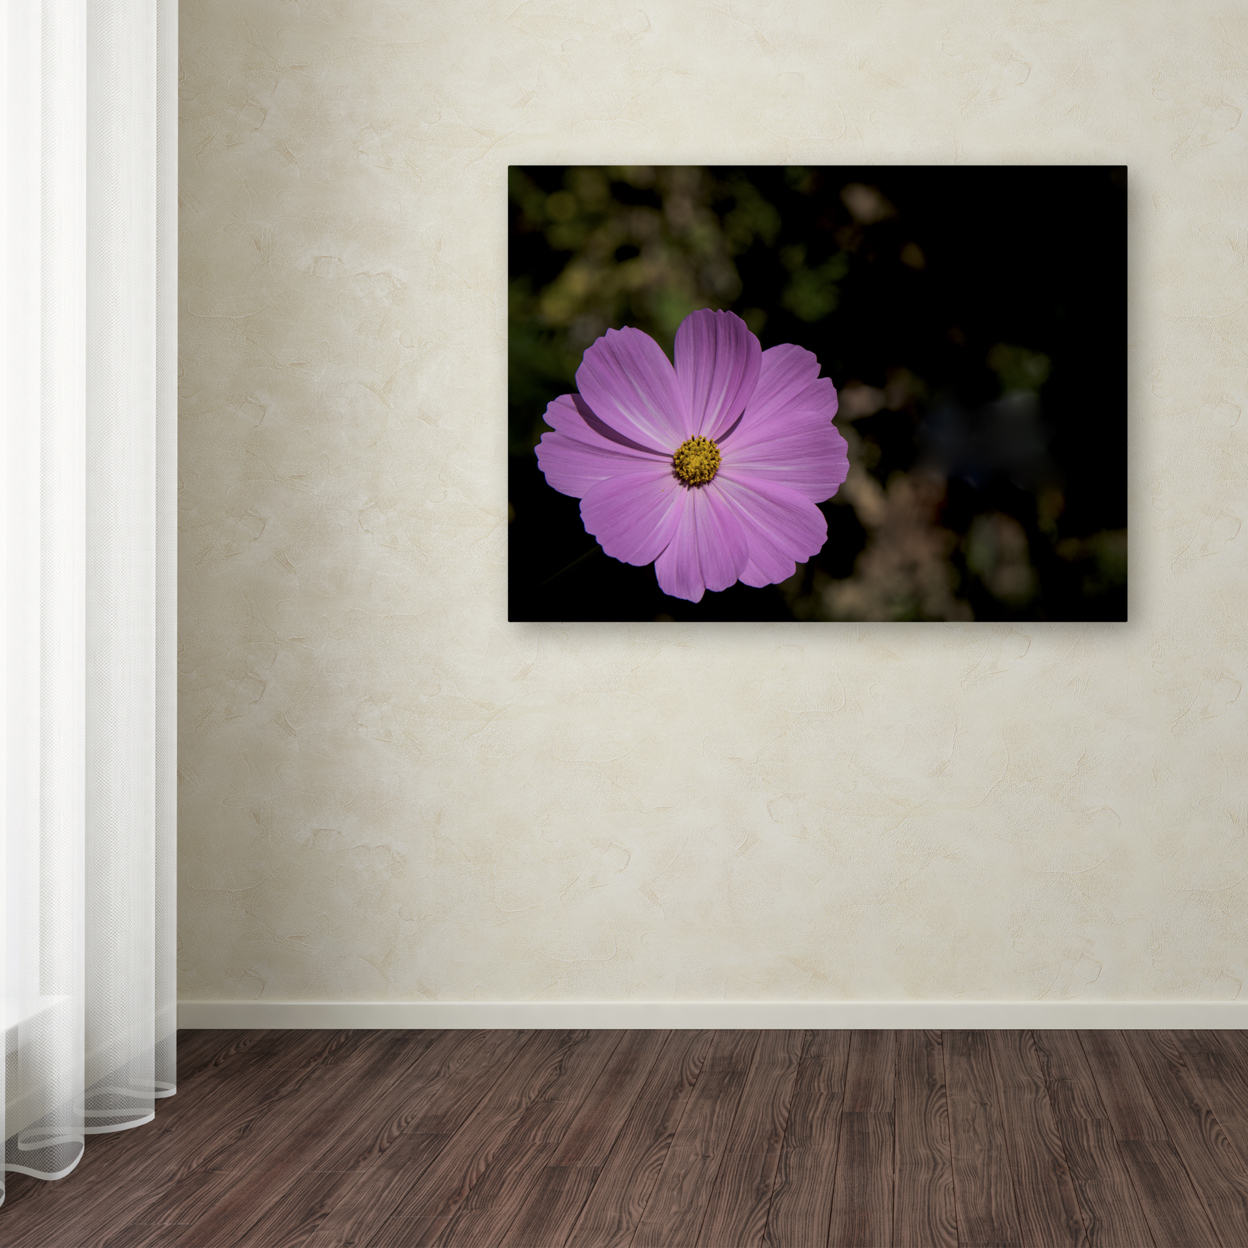 Kurt Shaffer 'Pink Cosmos Flower' Canvas Wall Art 35 X 47 Inches